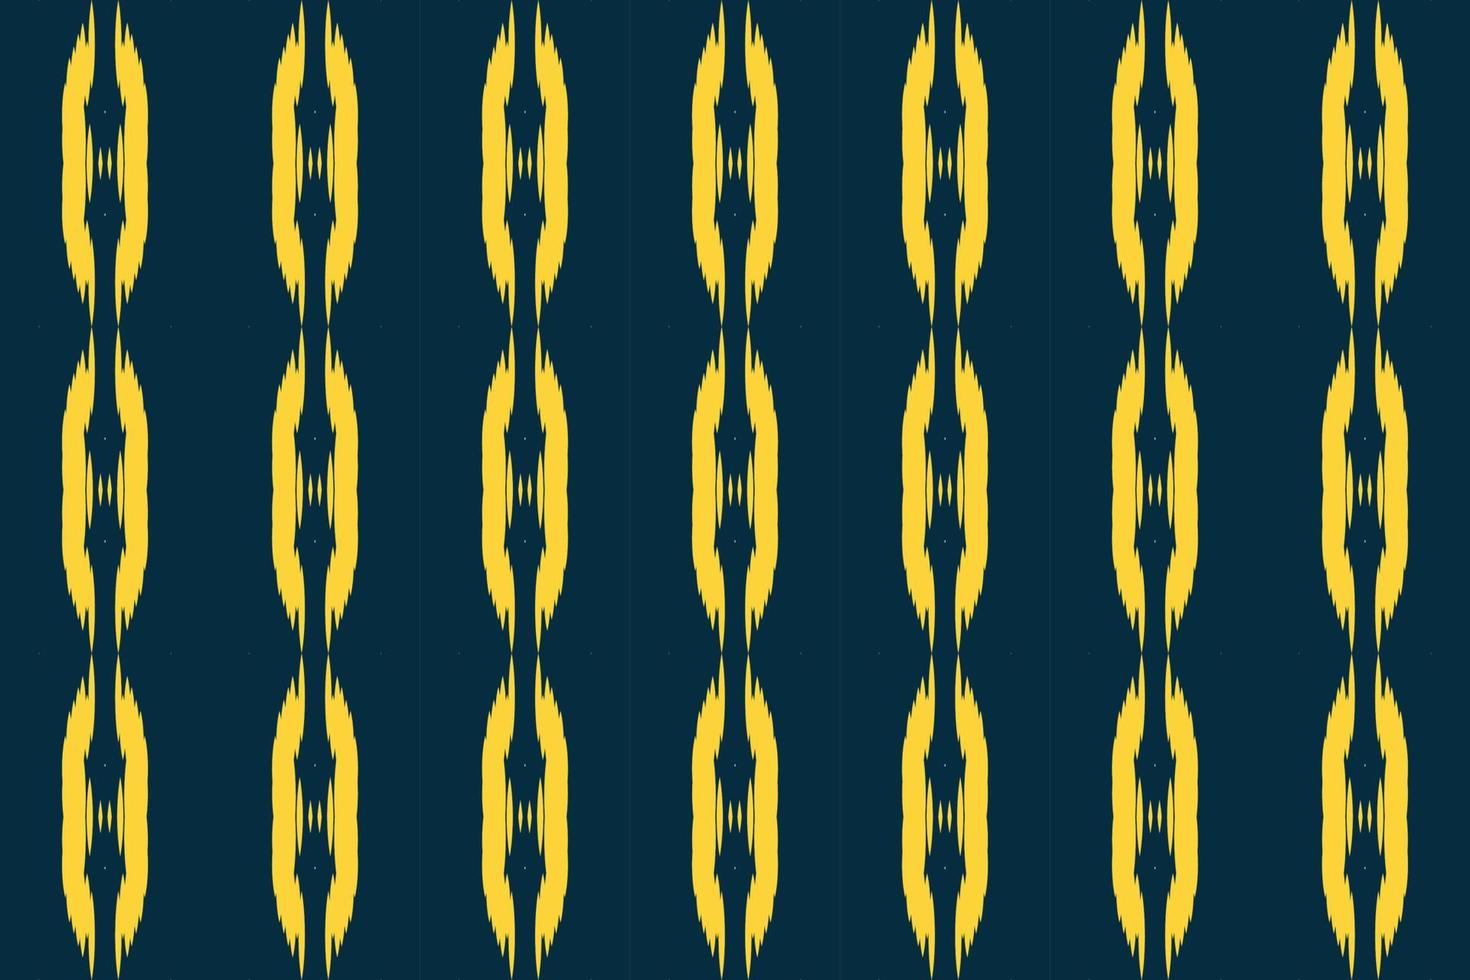 motiv ikat mönster stam- afrika borneo scandinavian batik bohemisk textur digital vektor design för skriva ut saree kurti tyg borsta symboler färgrutor